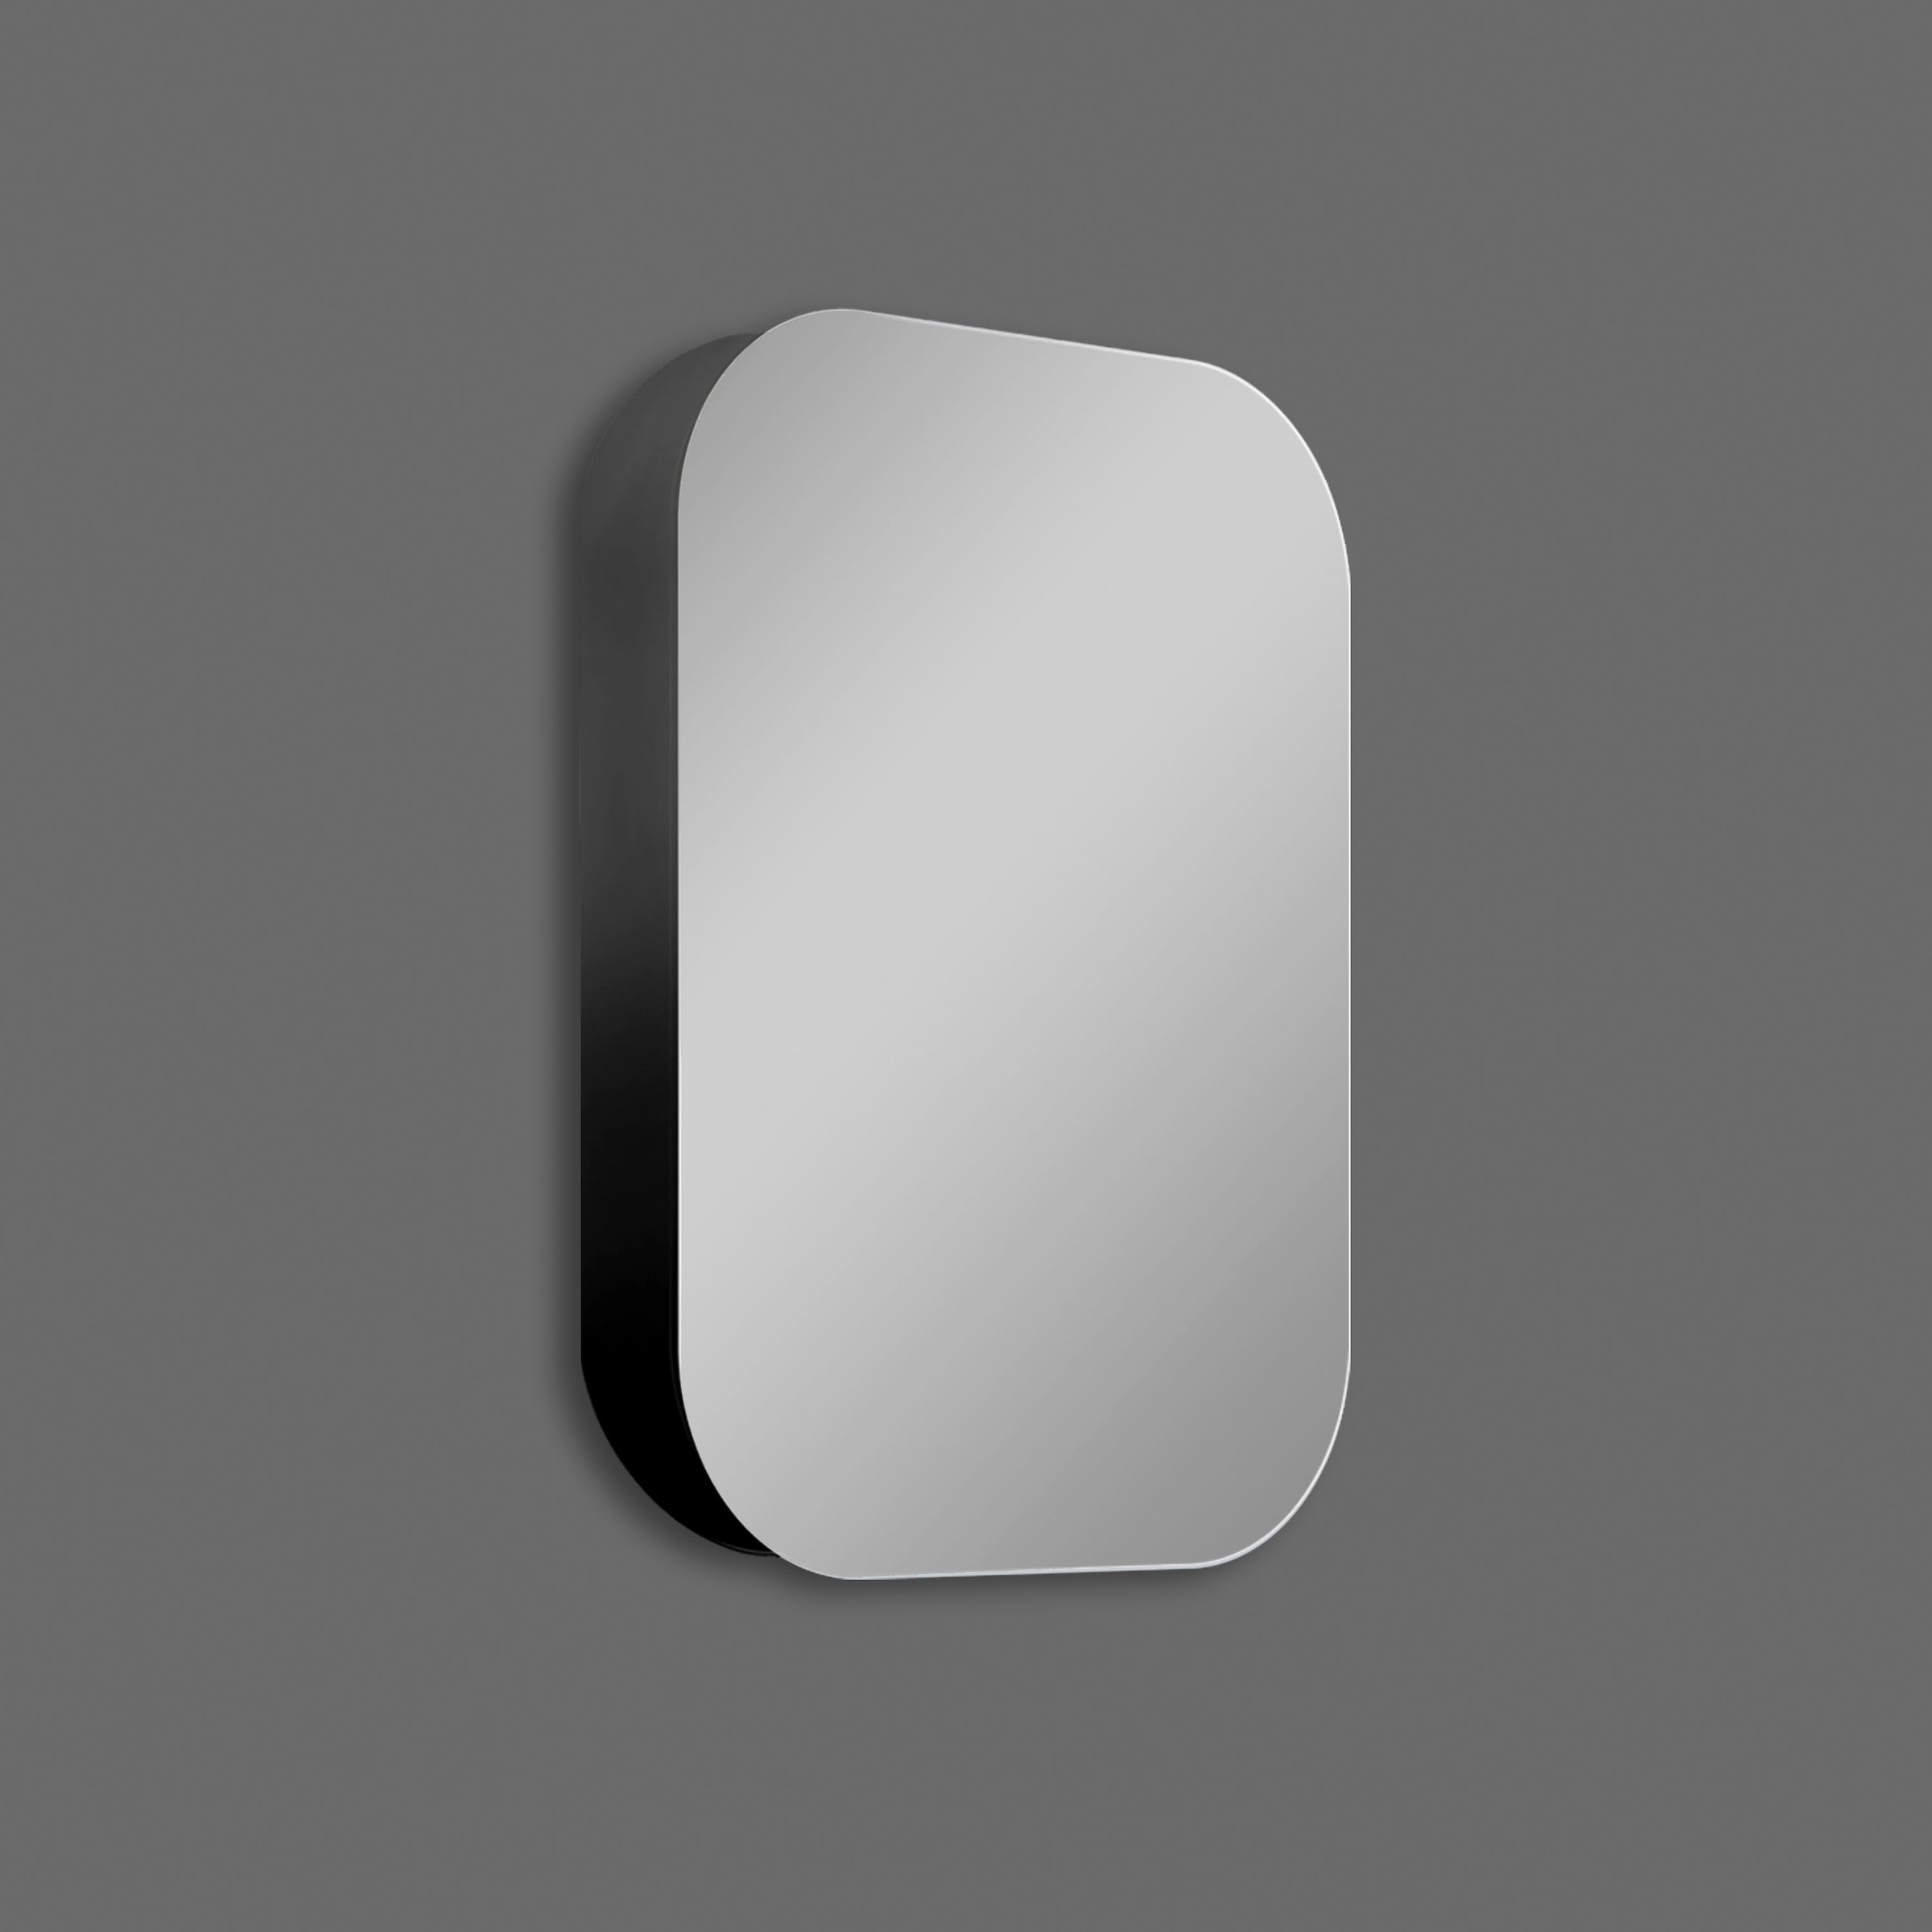 Talos Badezimmerspiegelschrank, oval, BxH: 40x60 cm, aus Alumunium und Echtglas, IP24, schwarz